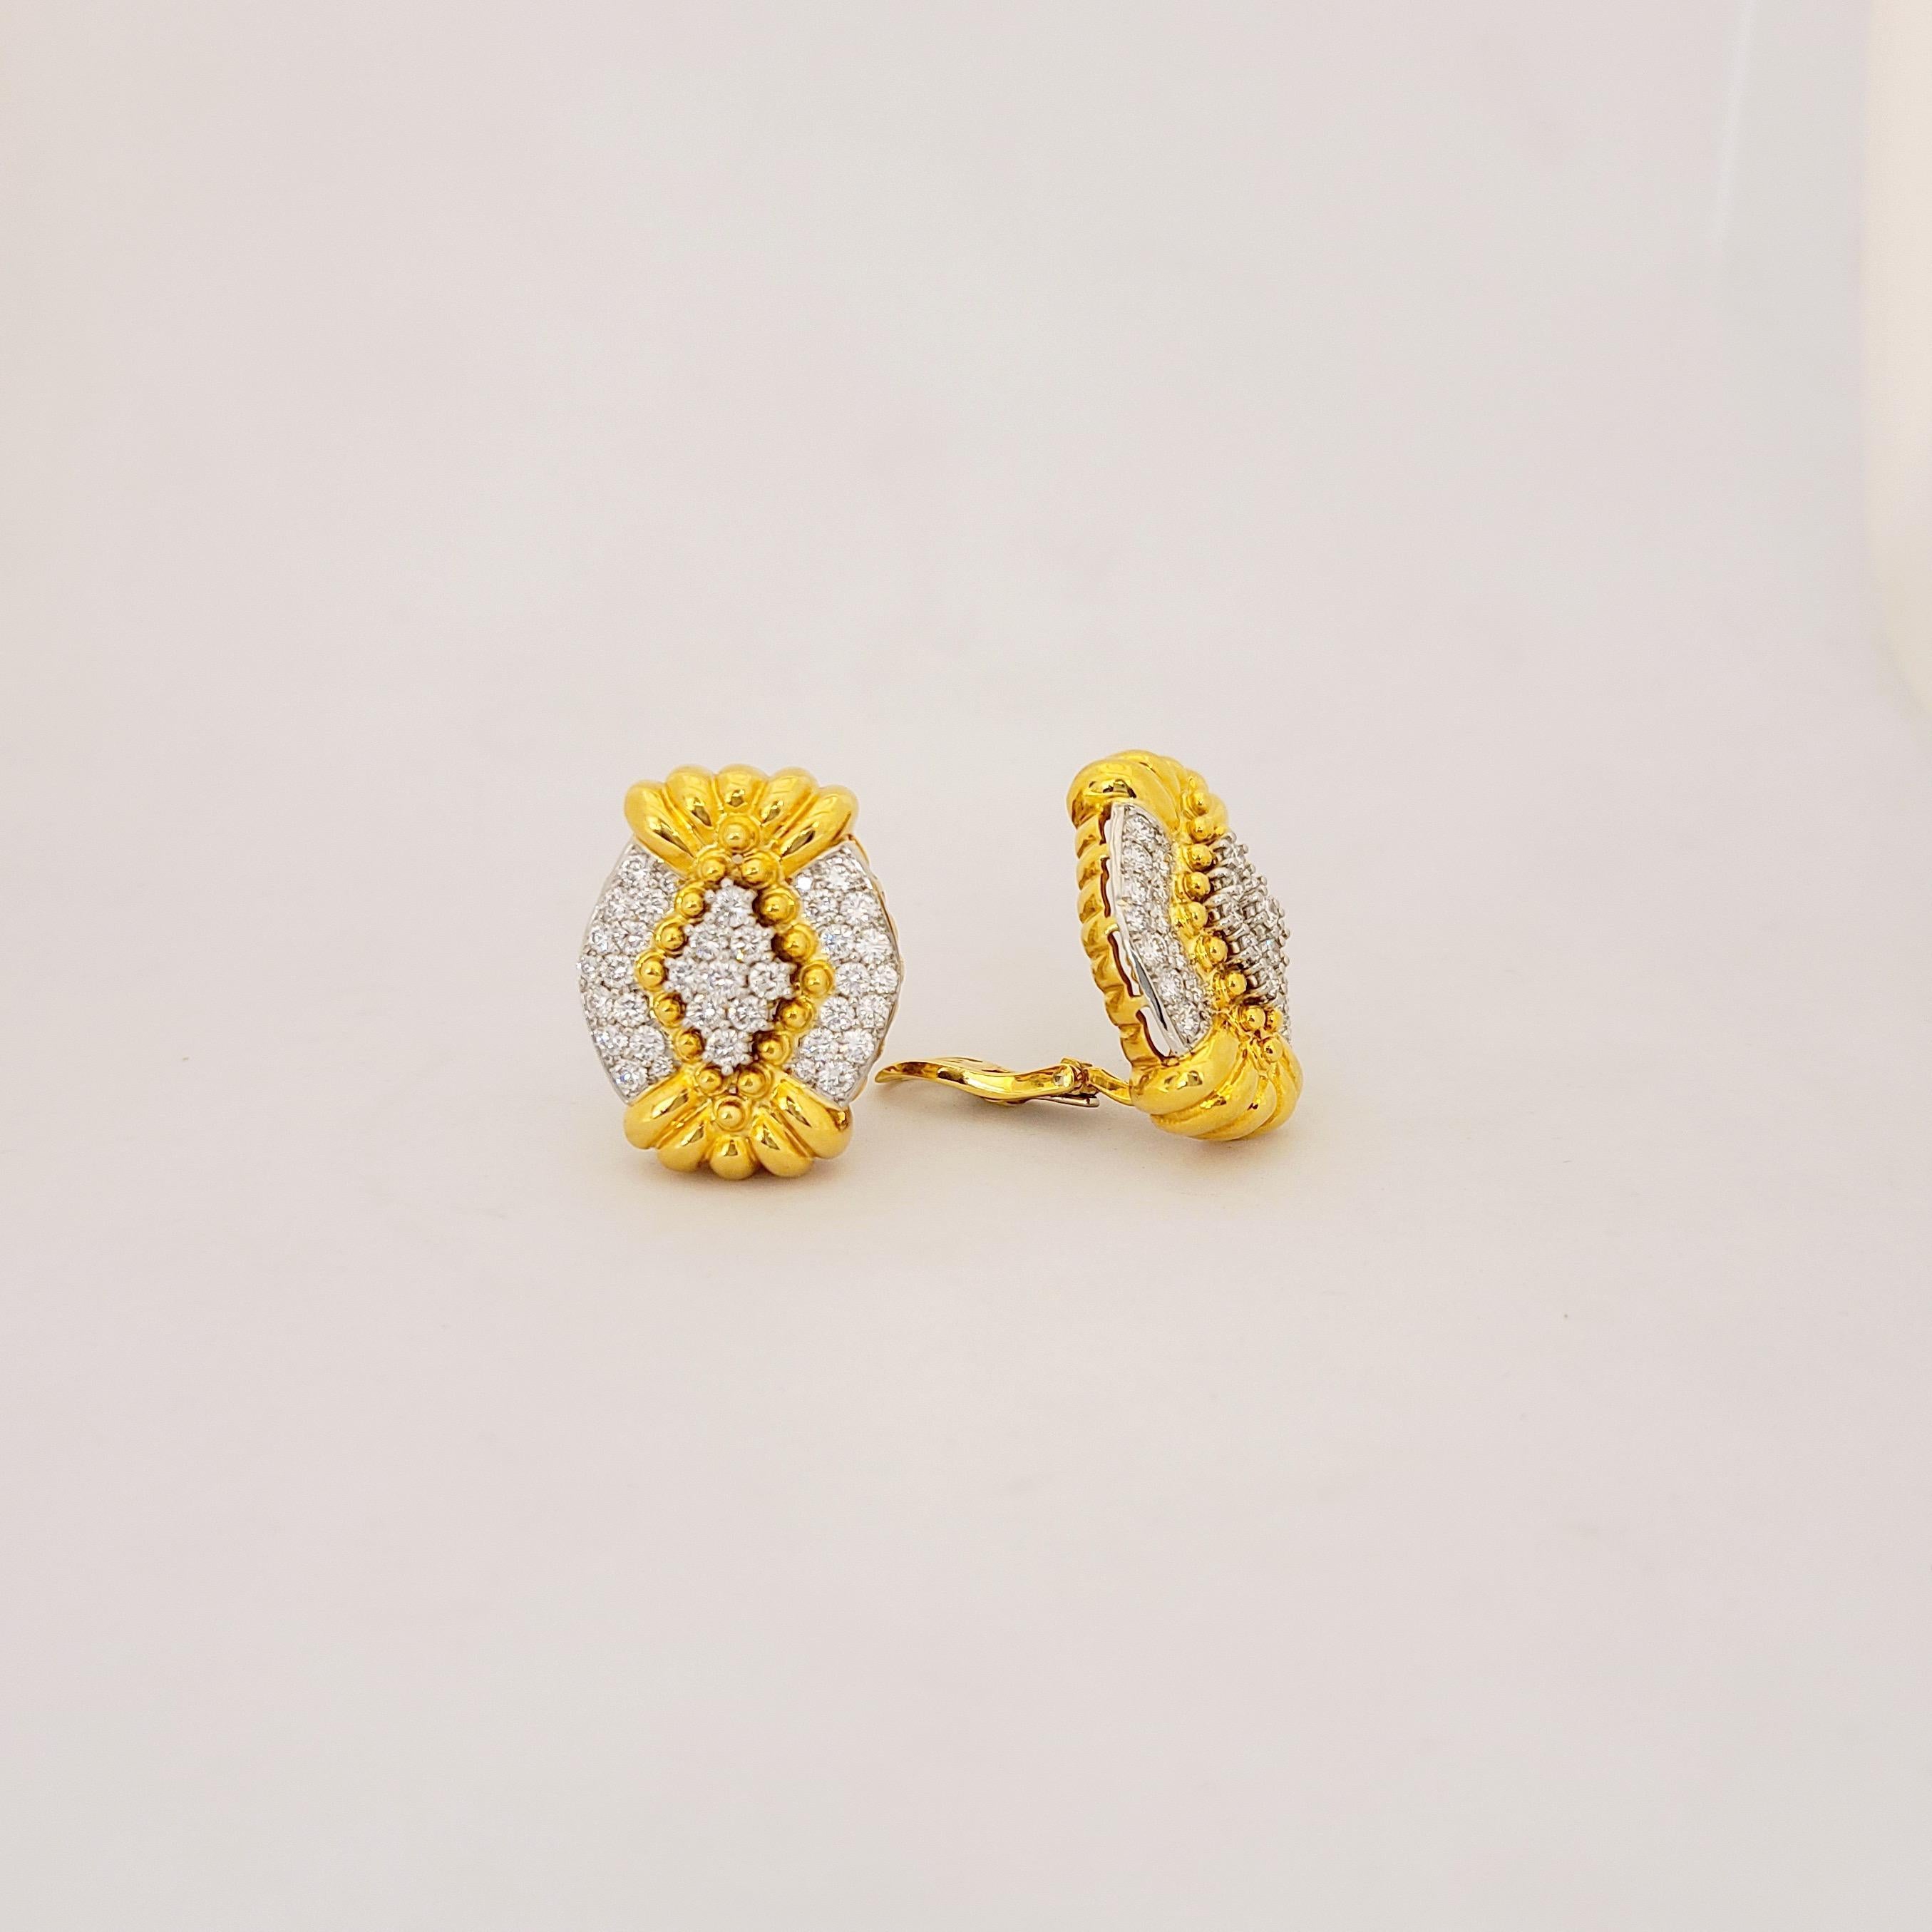 Schöner Diamant aus 18 Karat Gelbgold und Platin, entworfen von Tilson Gem Designs für ihre Chaavae Collection. Diese wunderschönen Ohrringe sind in einem modifizierten Oval geformt und enthalten 3,50 ct. runde Brillanten, die in Platin gefasst